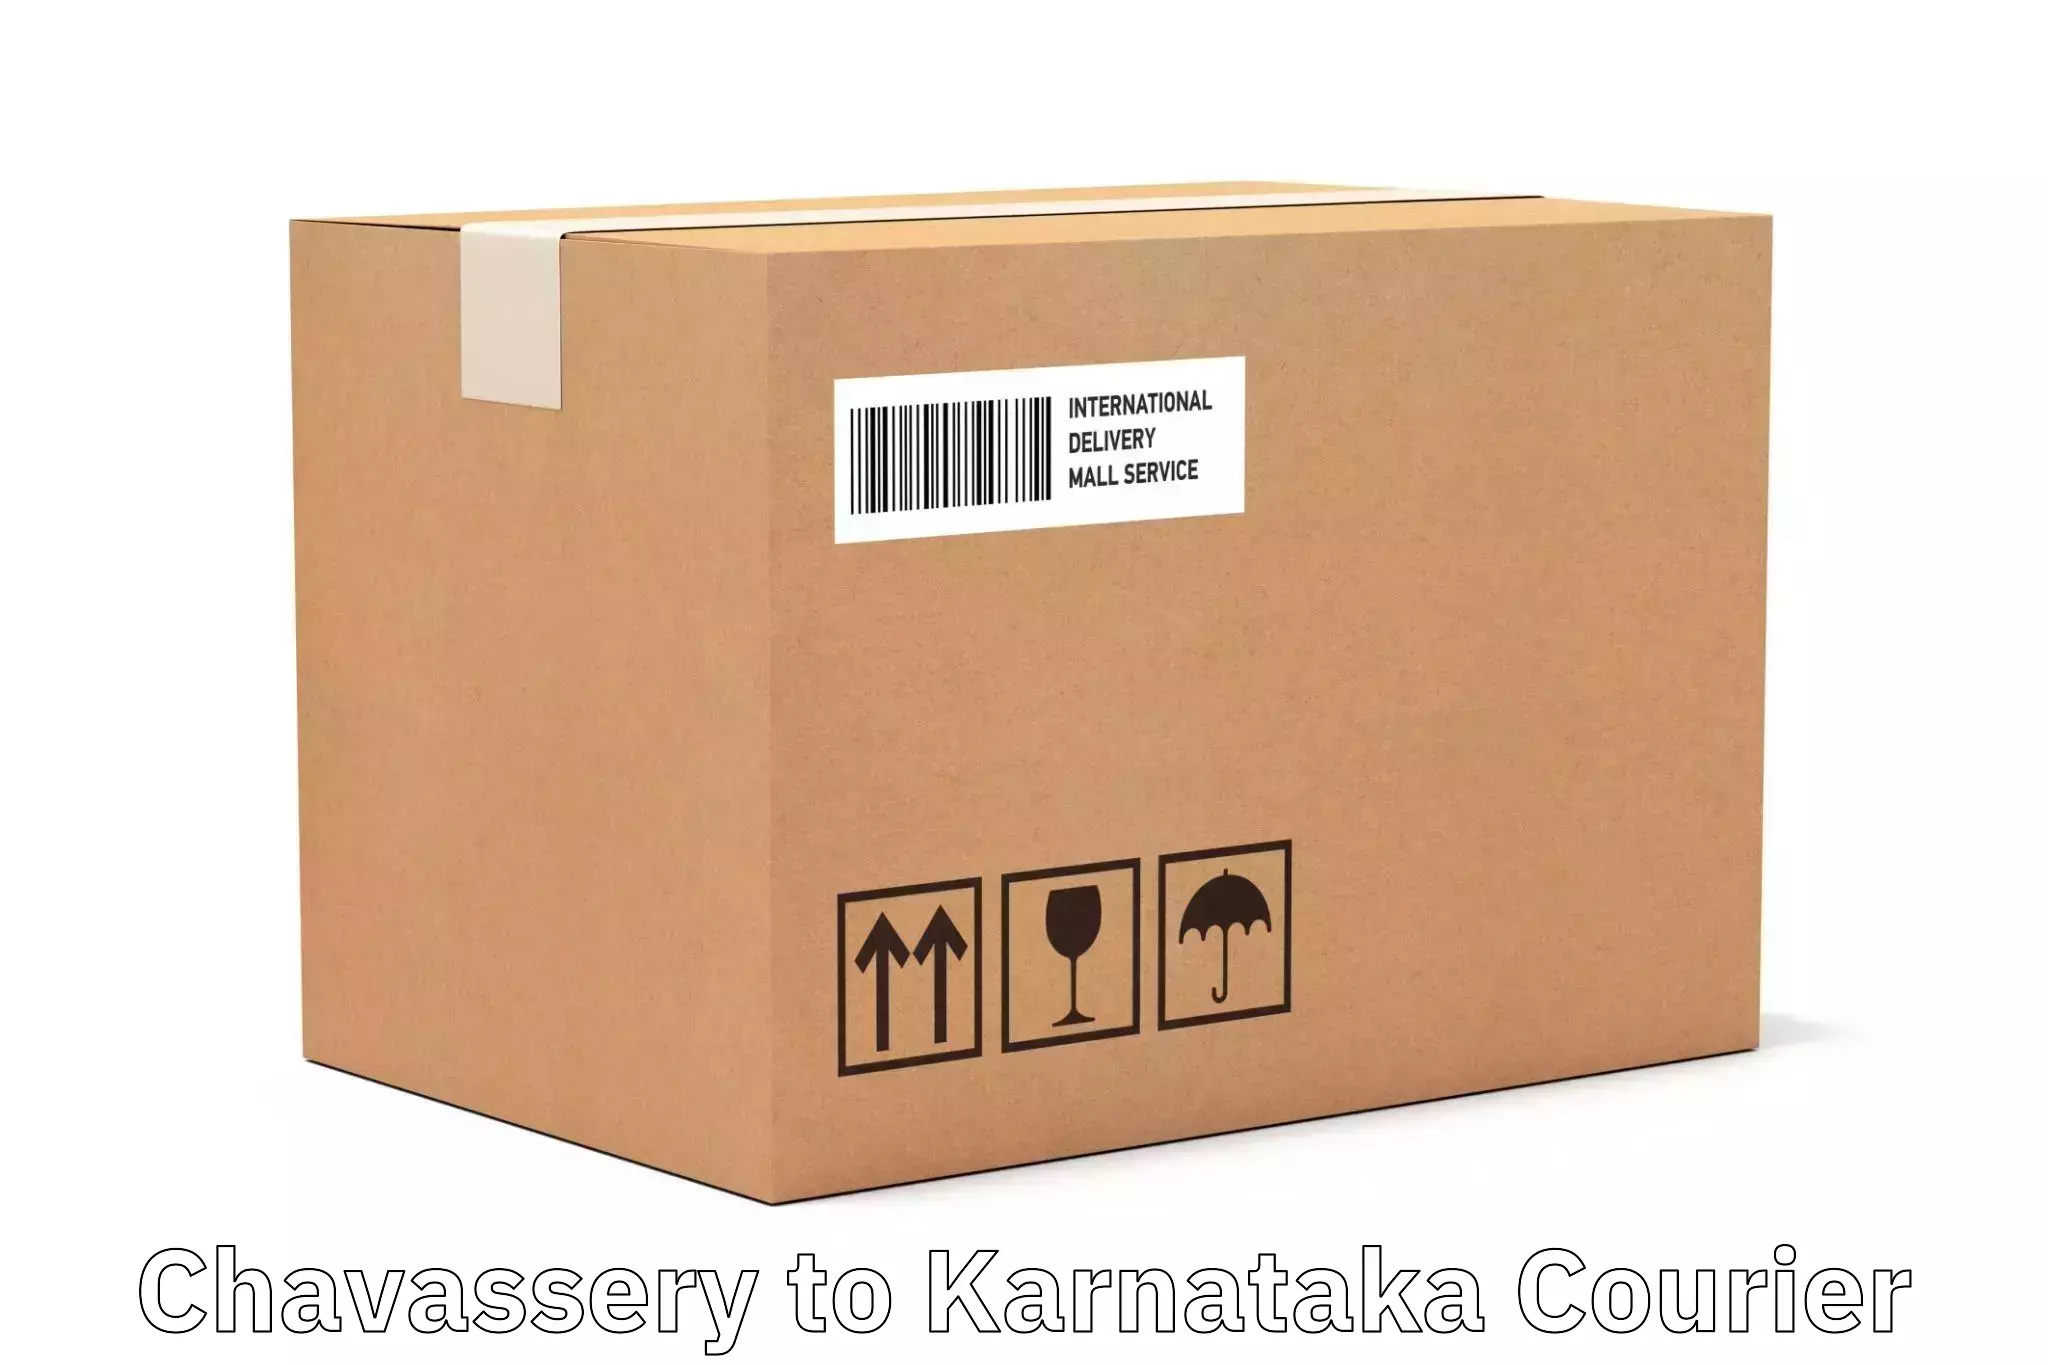 Nationwide delivery network Chavassery to Chikkanayakanahalli